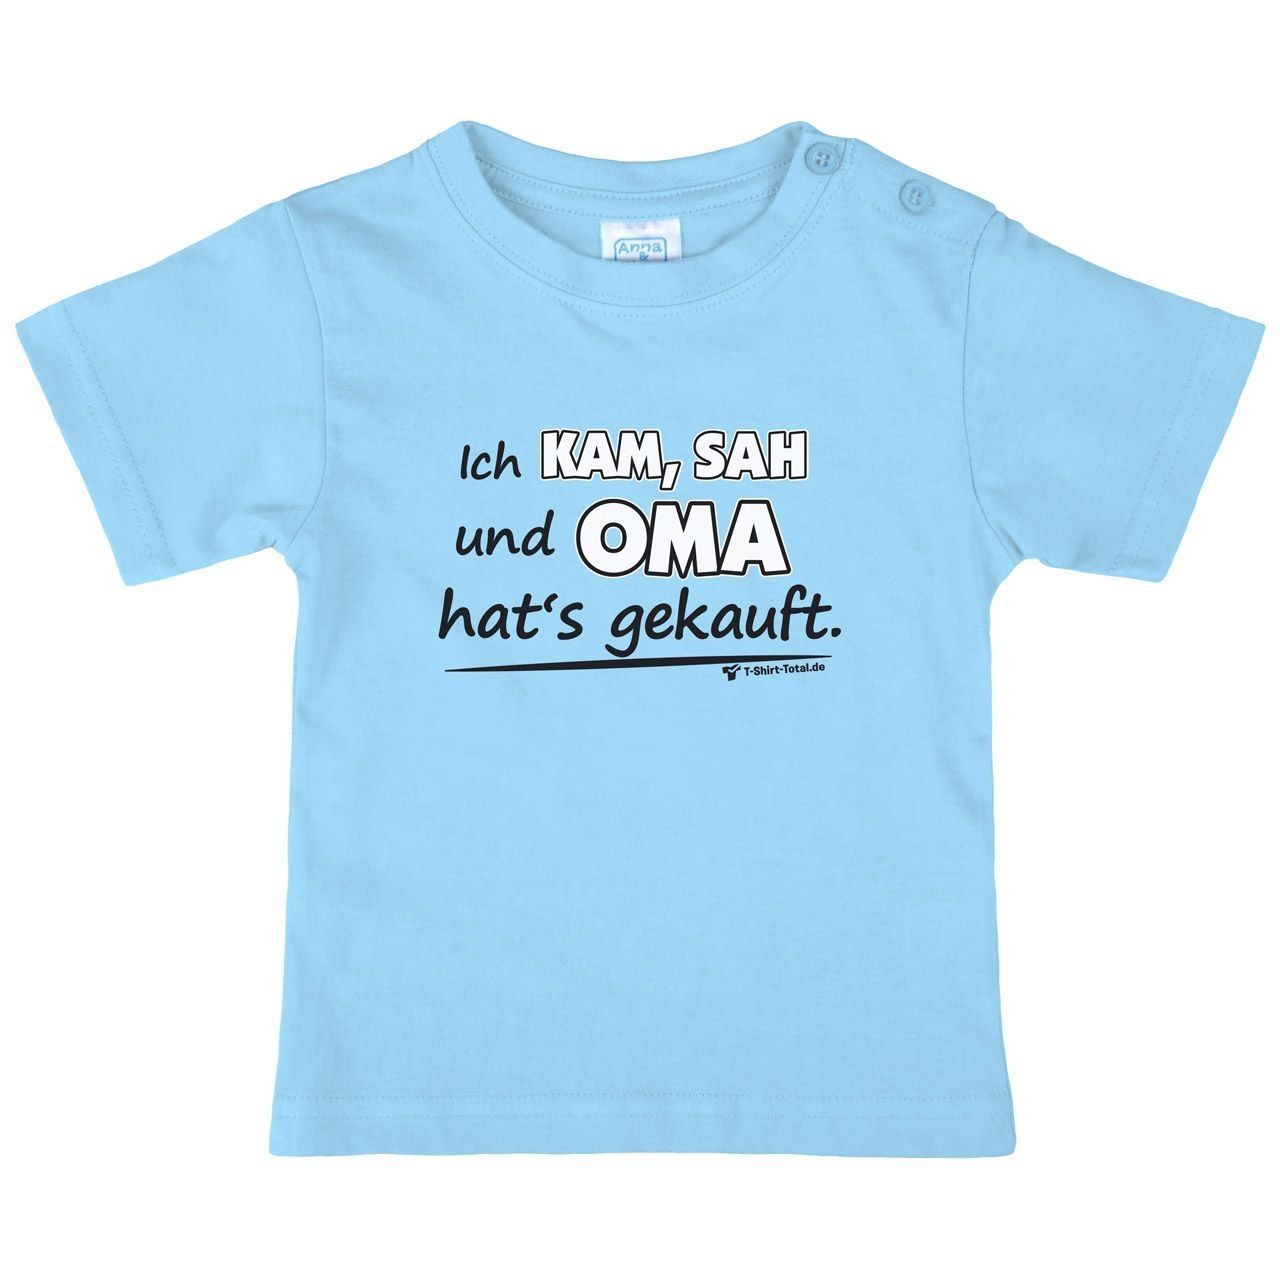 Oma hats gekauft Kinder T-Shirt hellblau 110 / 116